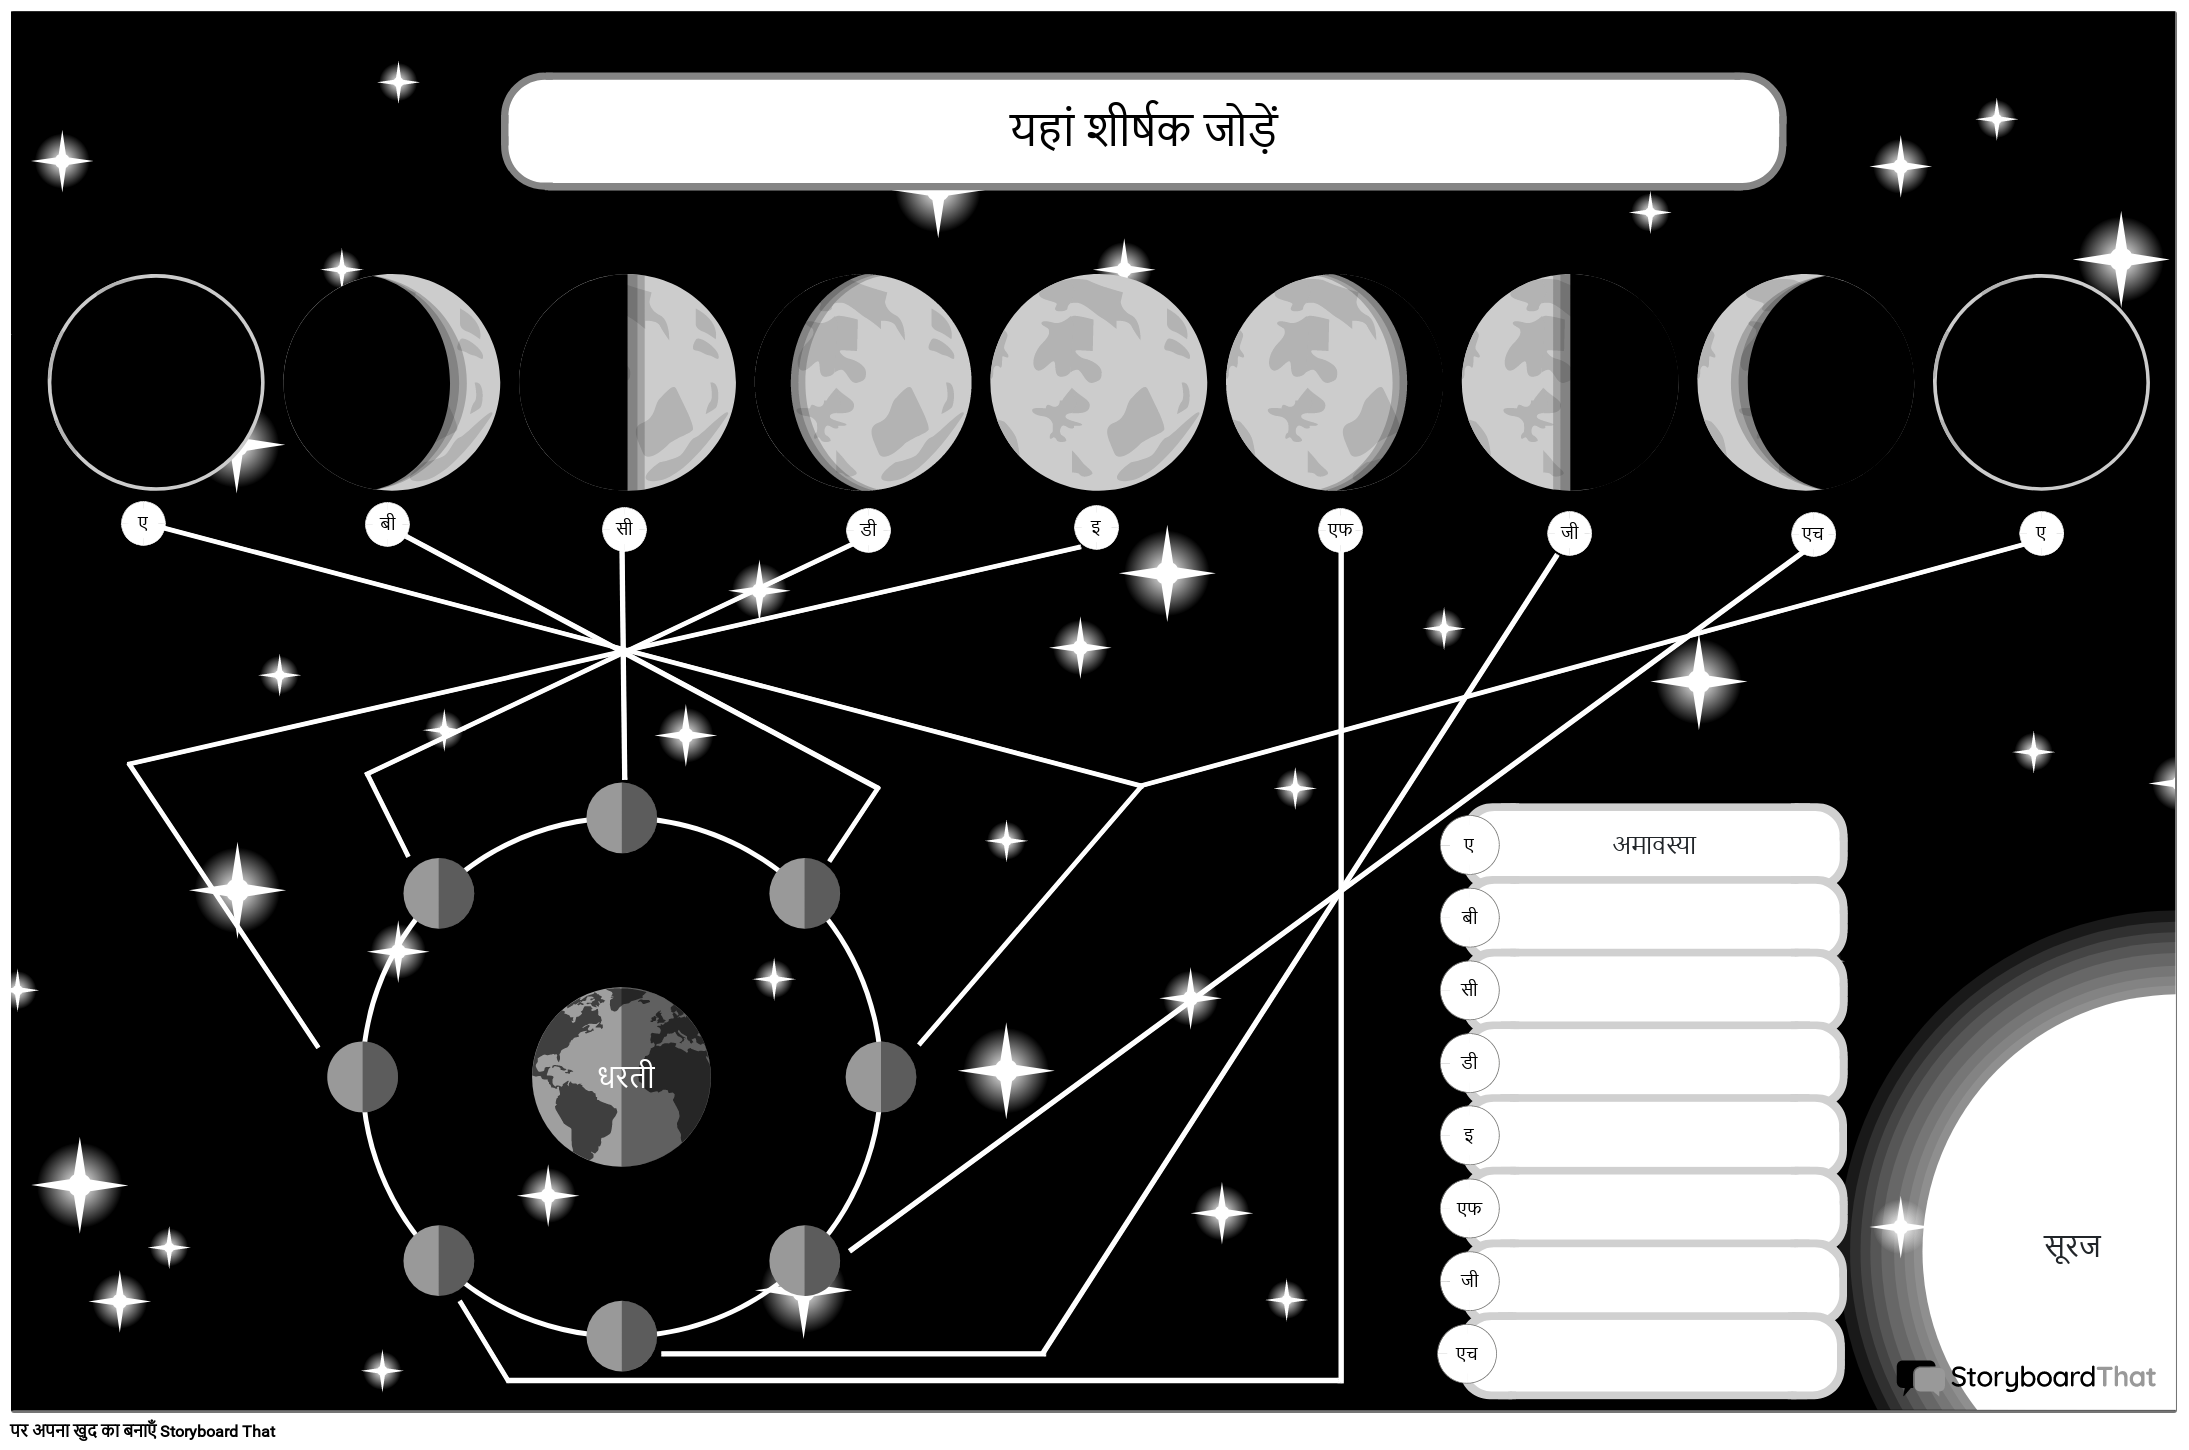 चंद्रमा के पोस्टर के आकाशगंगा-थीम वाले चरण